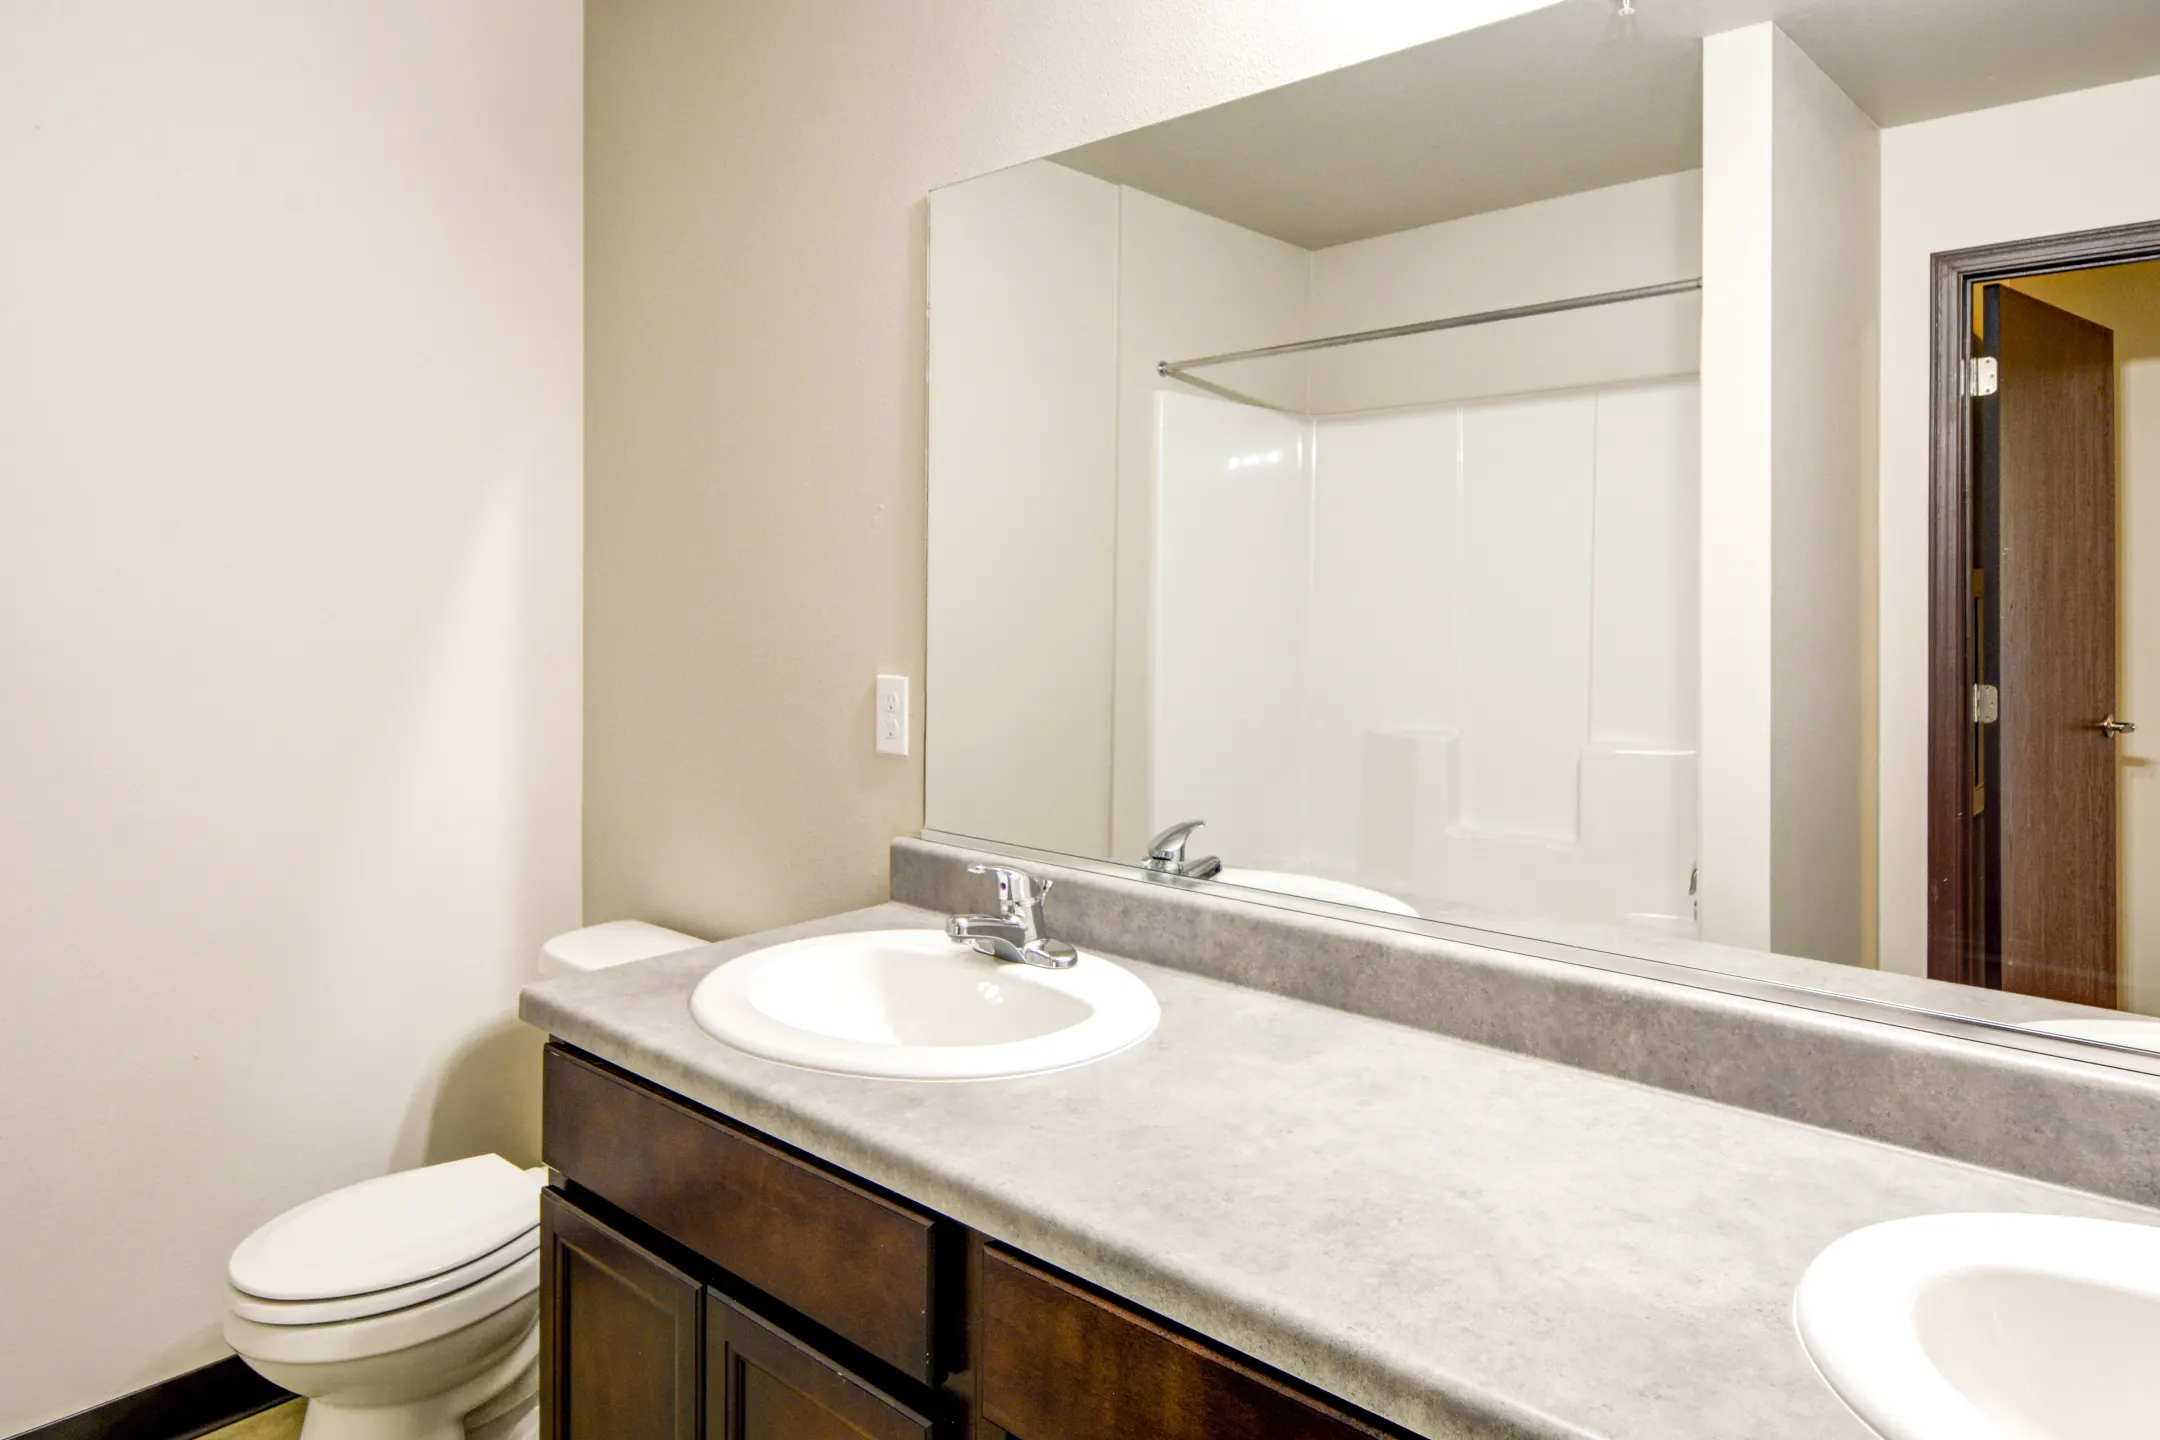 Bathroom - Bel Cielo Apartments - Post Falls, ID